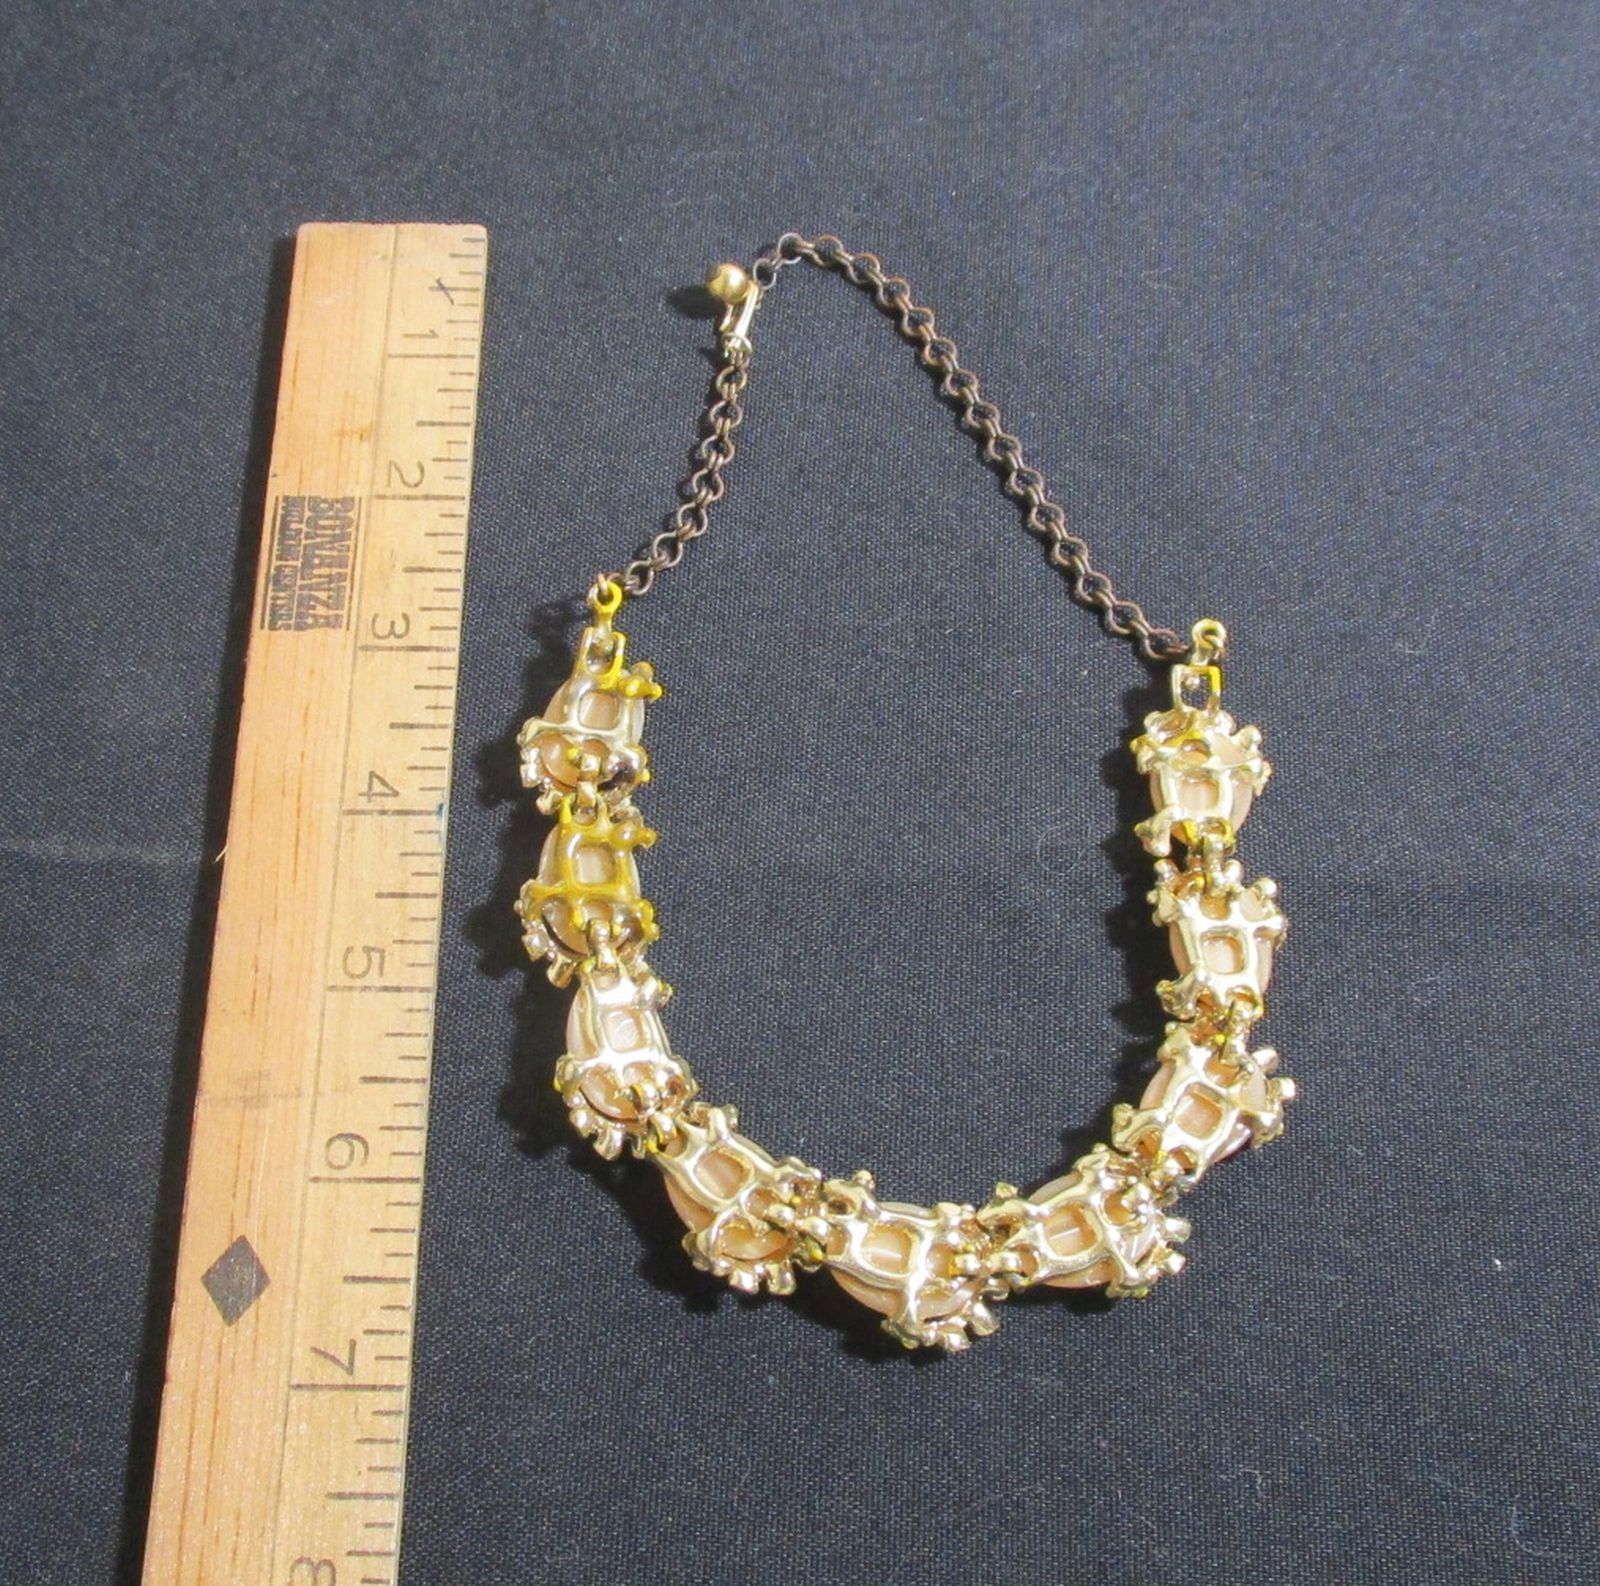 jewelry 008.JPG